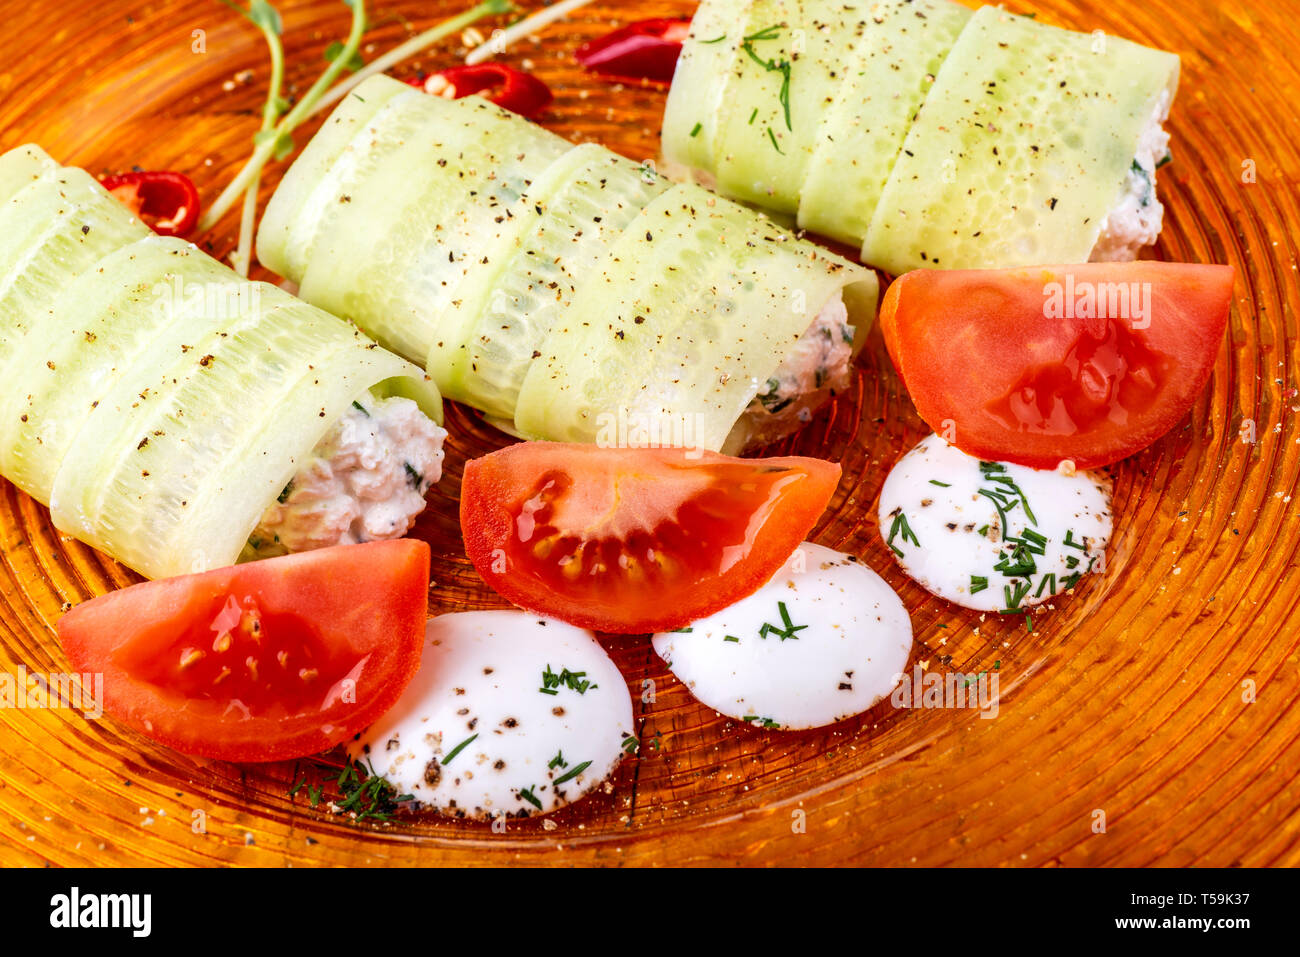 Il cibo italiano sfondo. Mozzarella, di foglie di basilico fresco, pomodoro, olio d'oliva, panini al formaggio e verdi sulla piastra. Macro Foto Stock